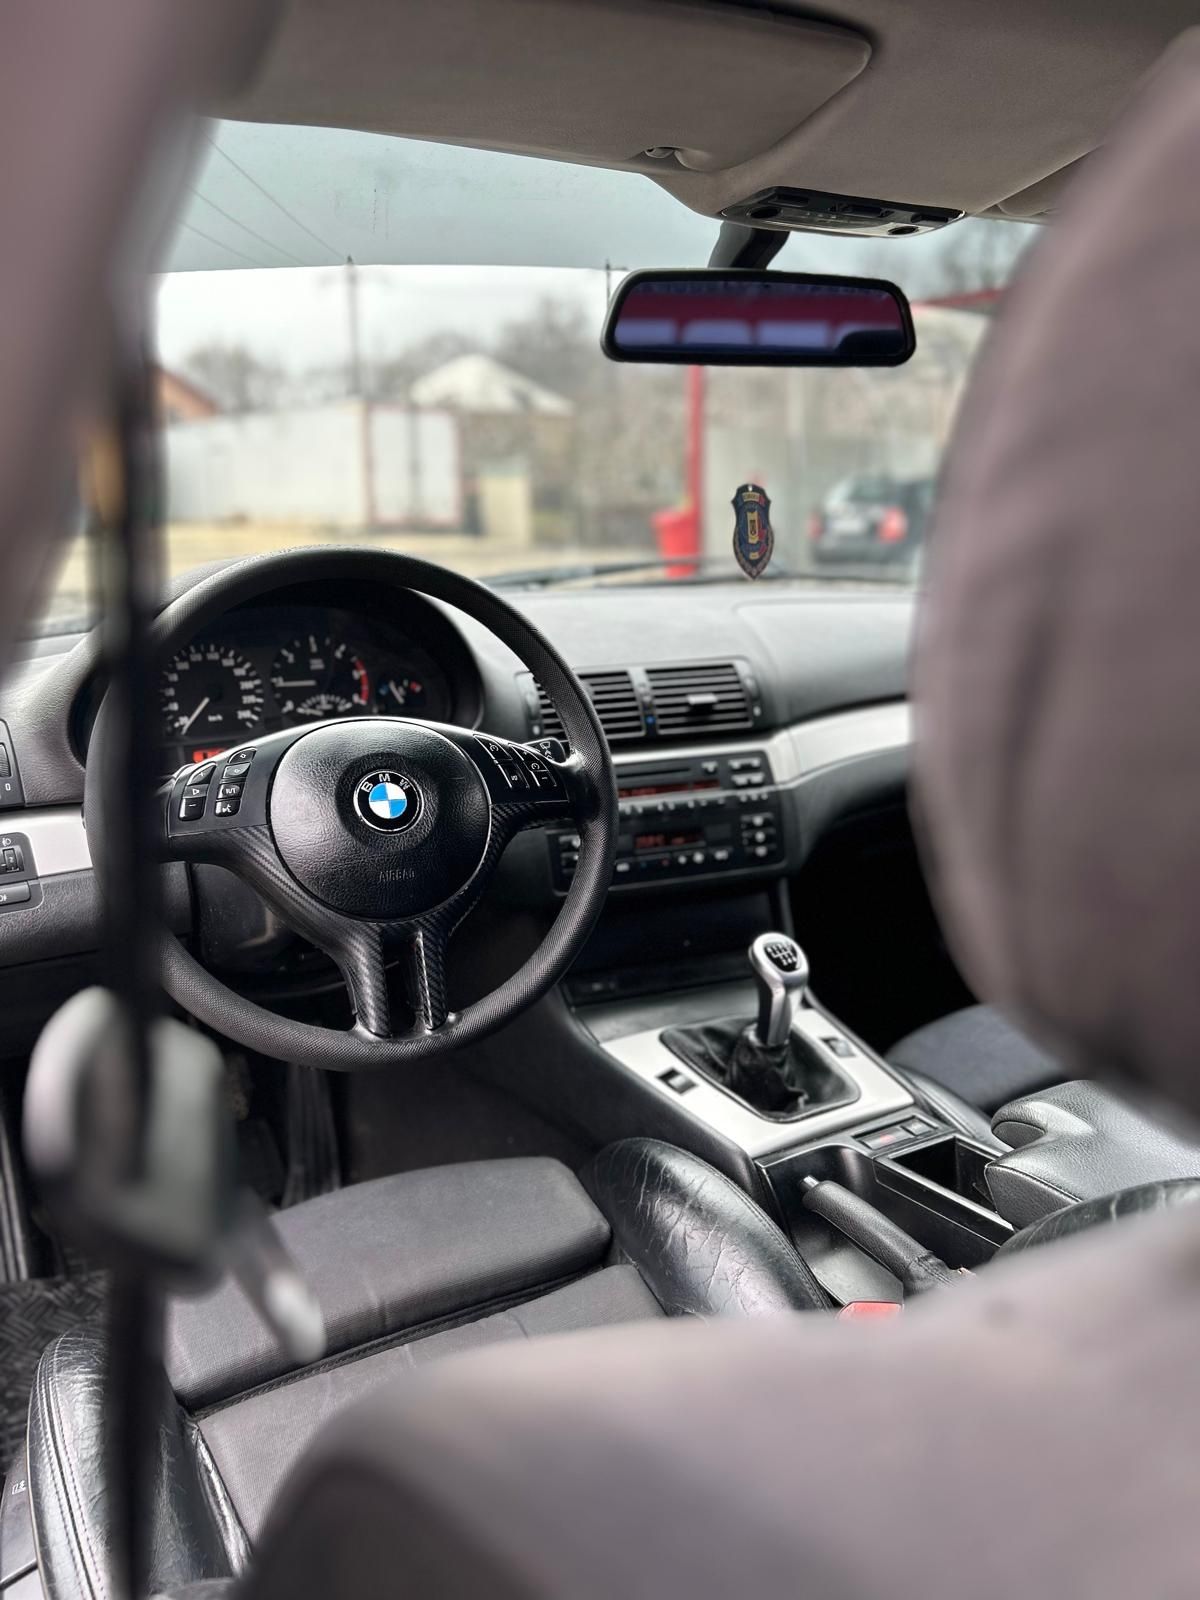 Autoturism BMW seria3